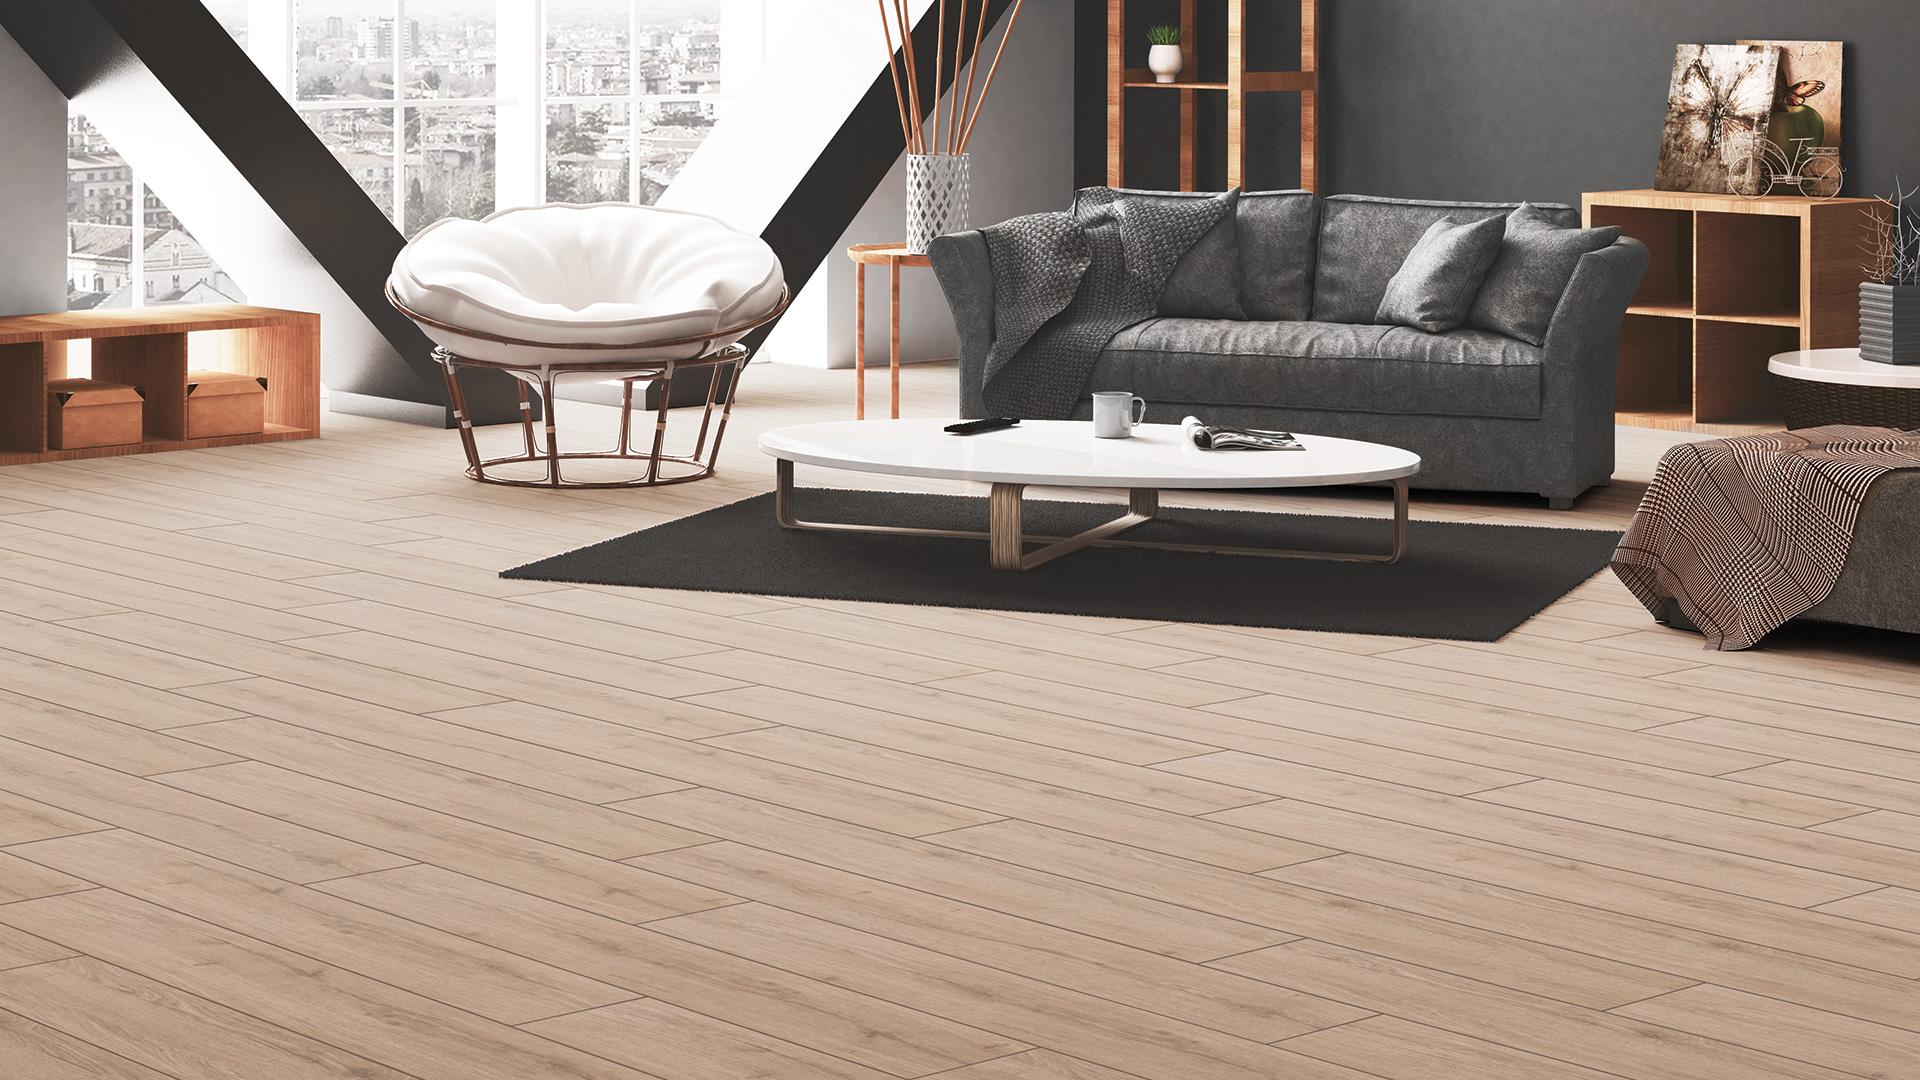 Floorpan Natural (Wood) Series 10 mm Altınkum Laminate Flooring, AC 4, Class 32 / Eng